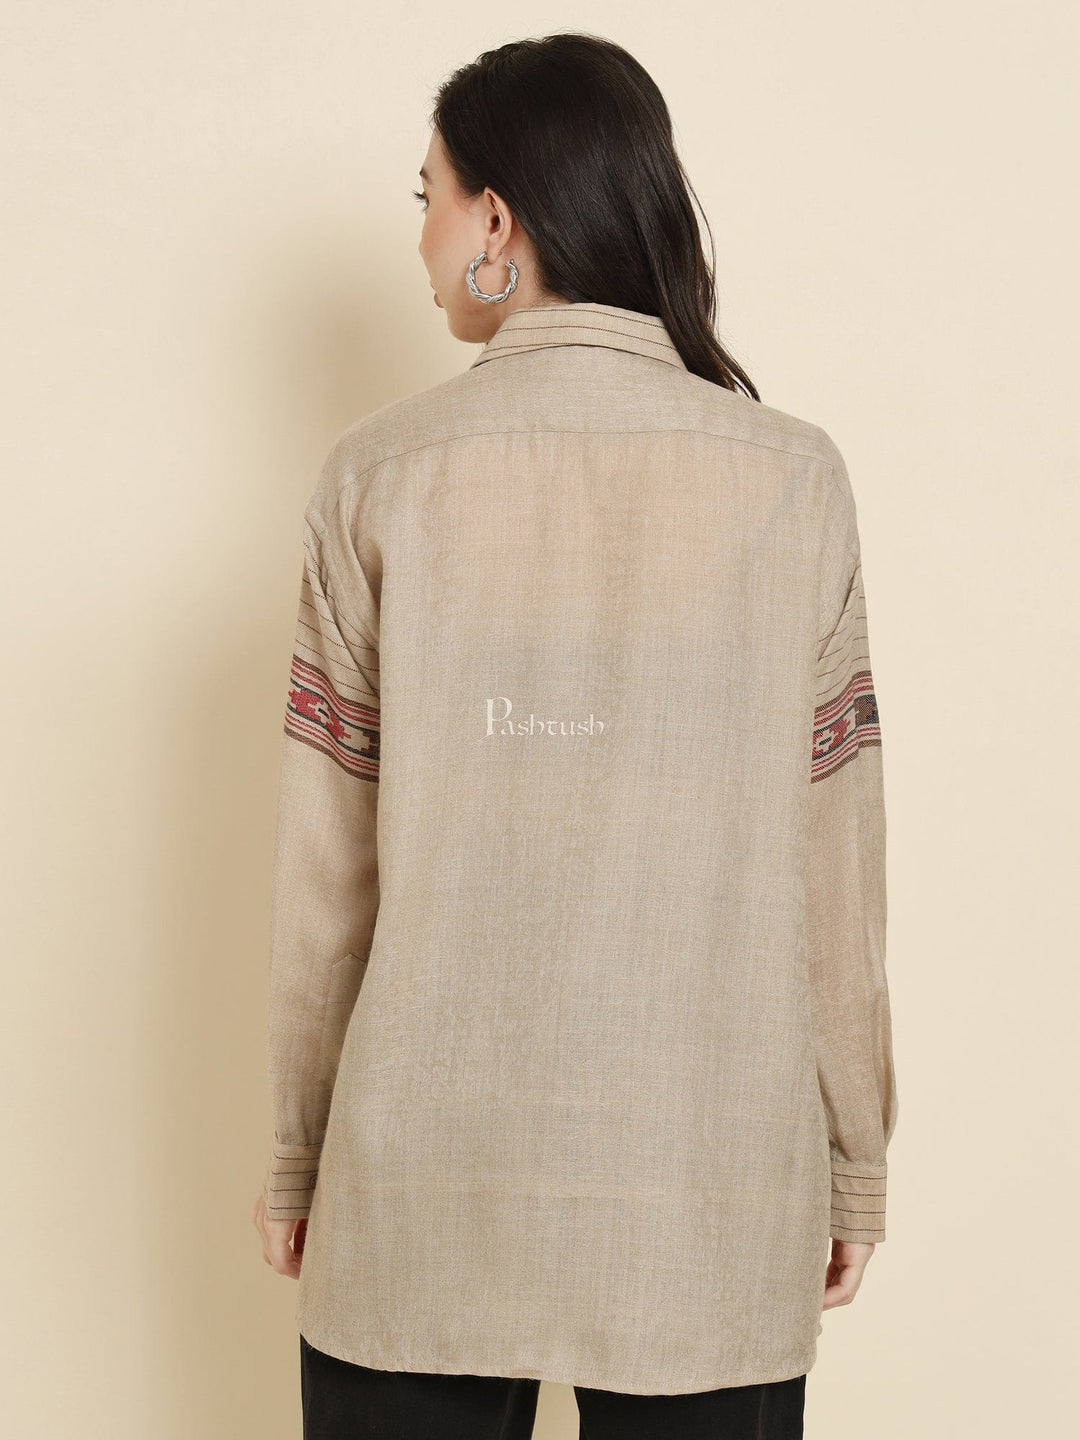 Pashtush India Womens Shirt Pashtush Womens Oversized Casual Woollen Shirt, Beige